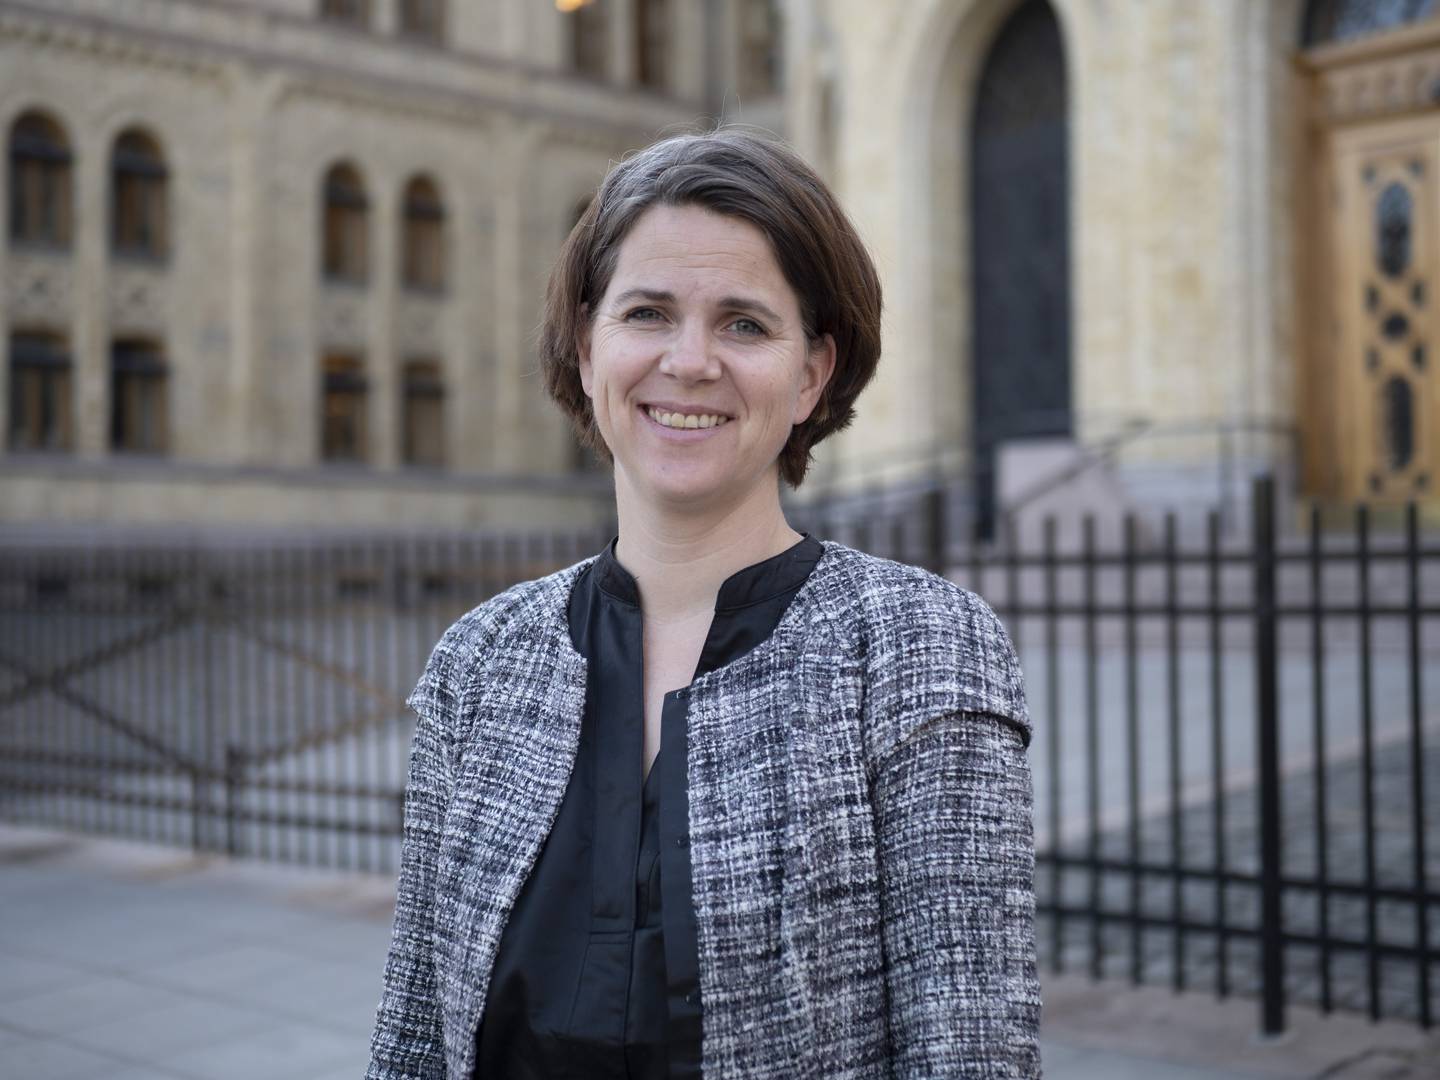 HAR NOMINERT: Solveig Schytz, Stortingsrepresentant for Venstre, har nominert speiderbevegelsen til Nobels fredspris.